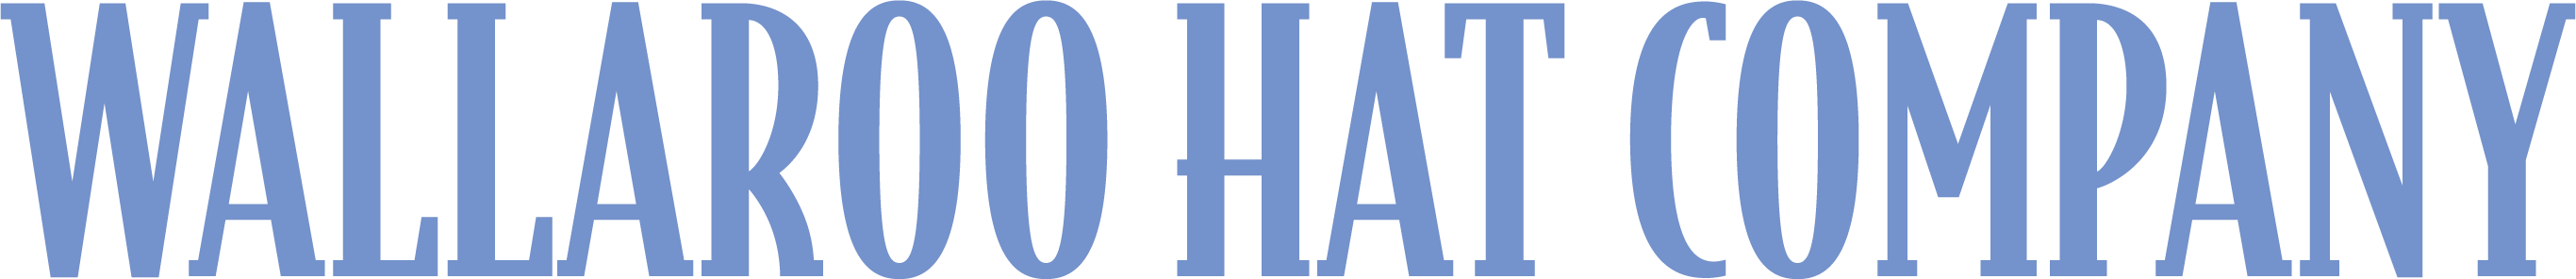 Wallaroo Help Center logo